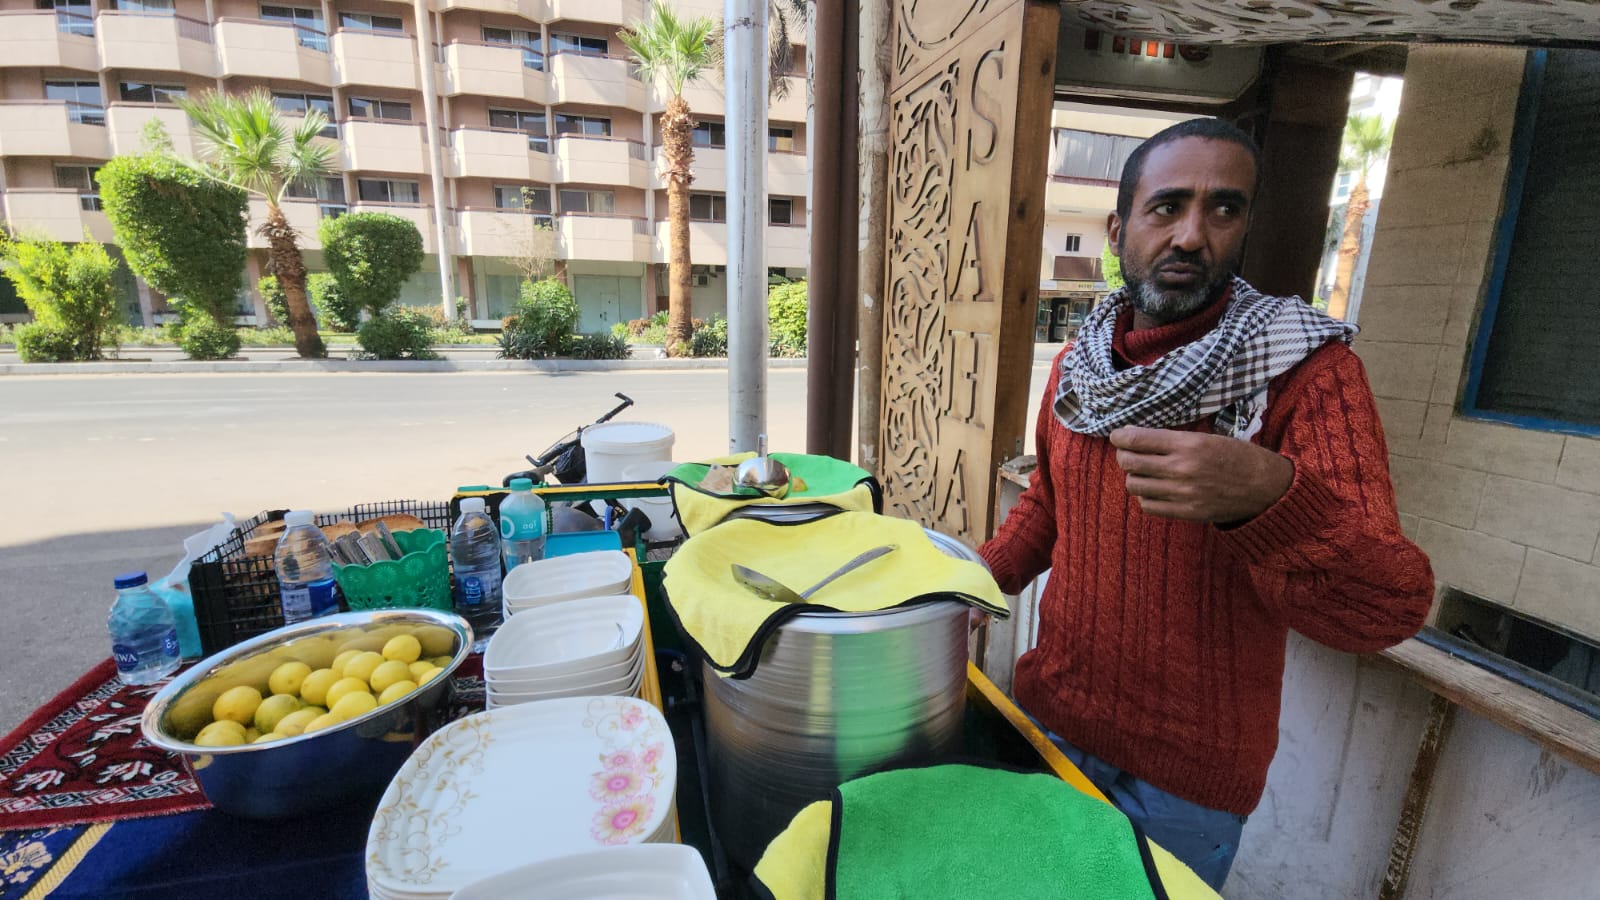 عربة مجهزة بالأكلات الشتوية الطازجة بأيدي الشيف محمود